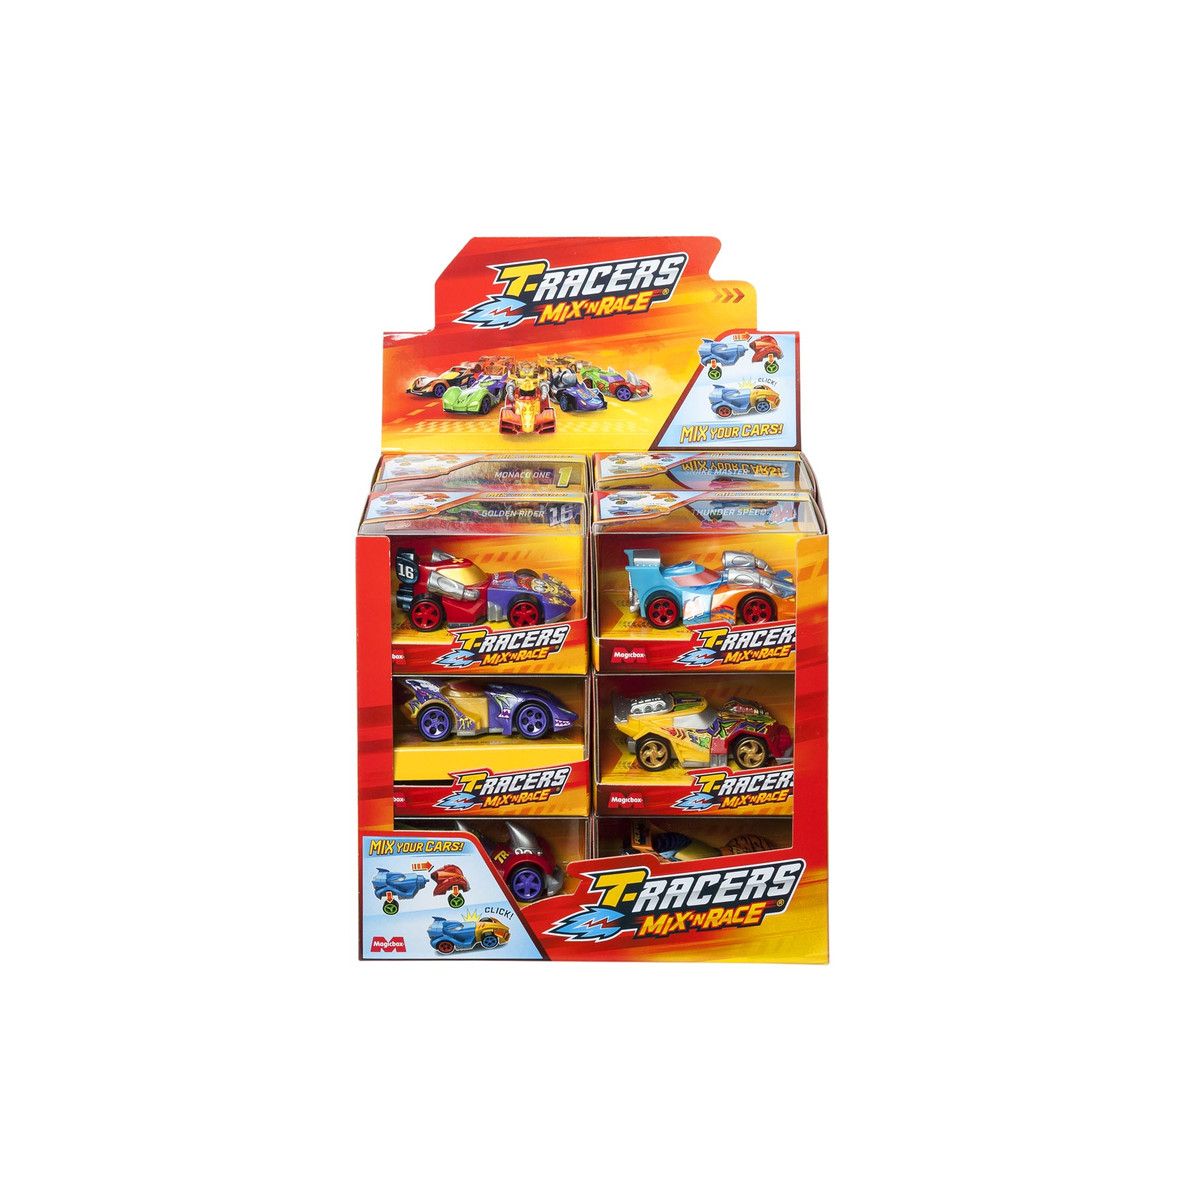 Samochód T-RACERS 2.0 Mix Orbico Sp. Z O.o. (PTR7D112IN00)